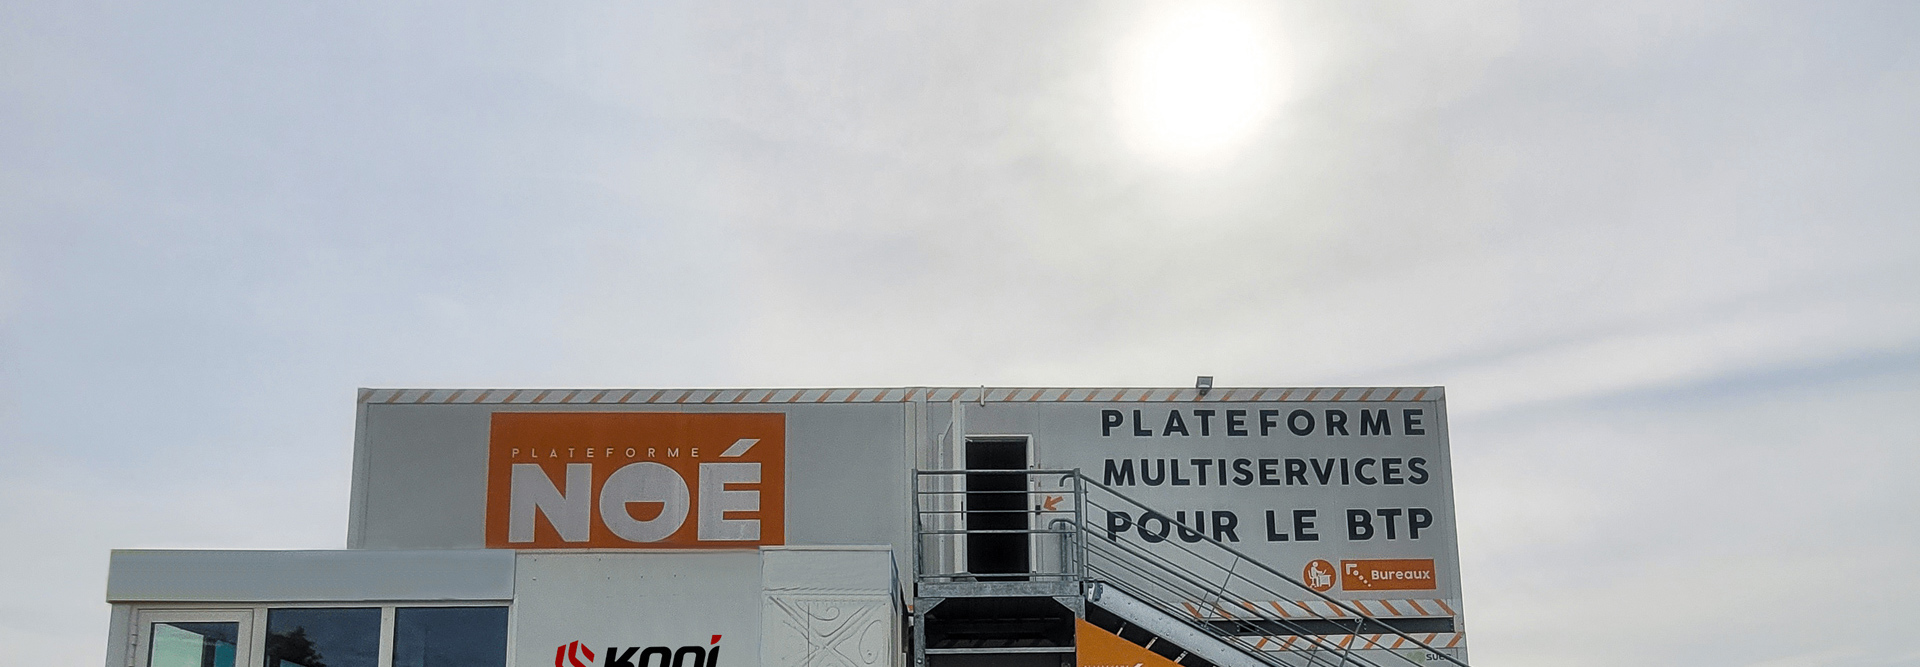 Kooi Camera Surveillance Joins NOÉ Platform In Bordeaux